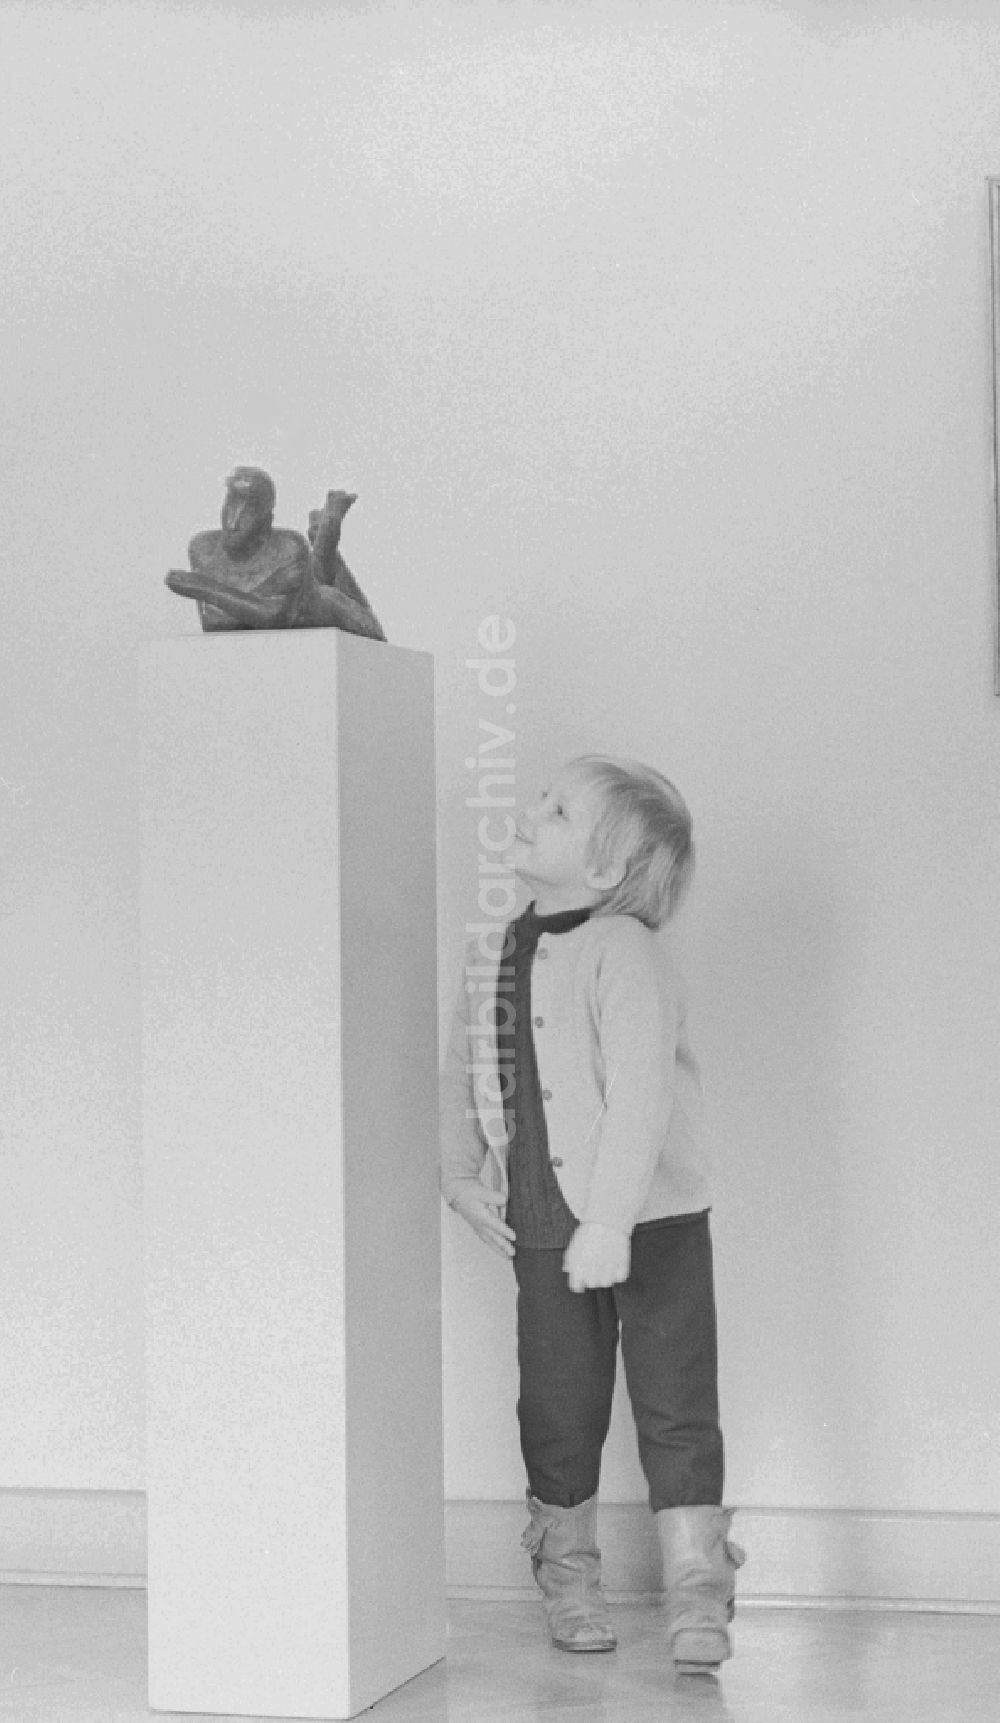 DDR-Fotoarchiv: Berlin - Ein Kind betrachte ein Ausstellungsstück im Alten Museum in Berlin, der ehemaligen Hauptstadt der DDR, Deutsche Demokratische Republik